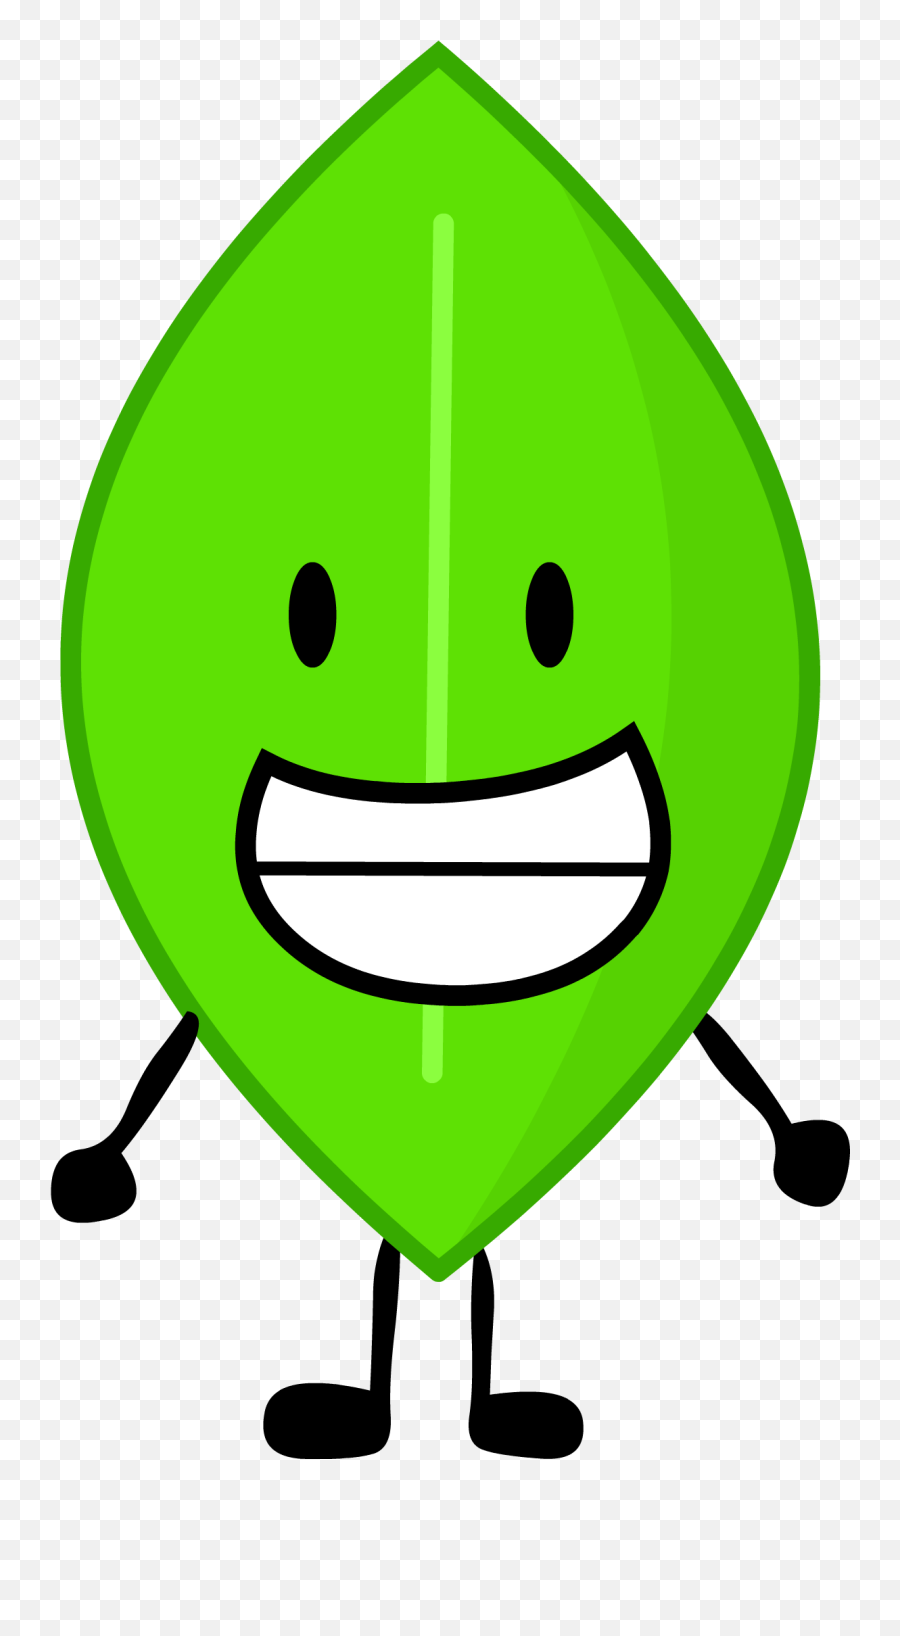 Leafy - Battle For Dream Island Leafy Emoji,Guess The Emoji Llolipop Teeth